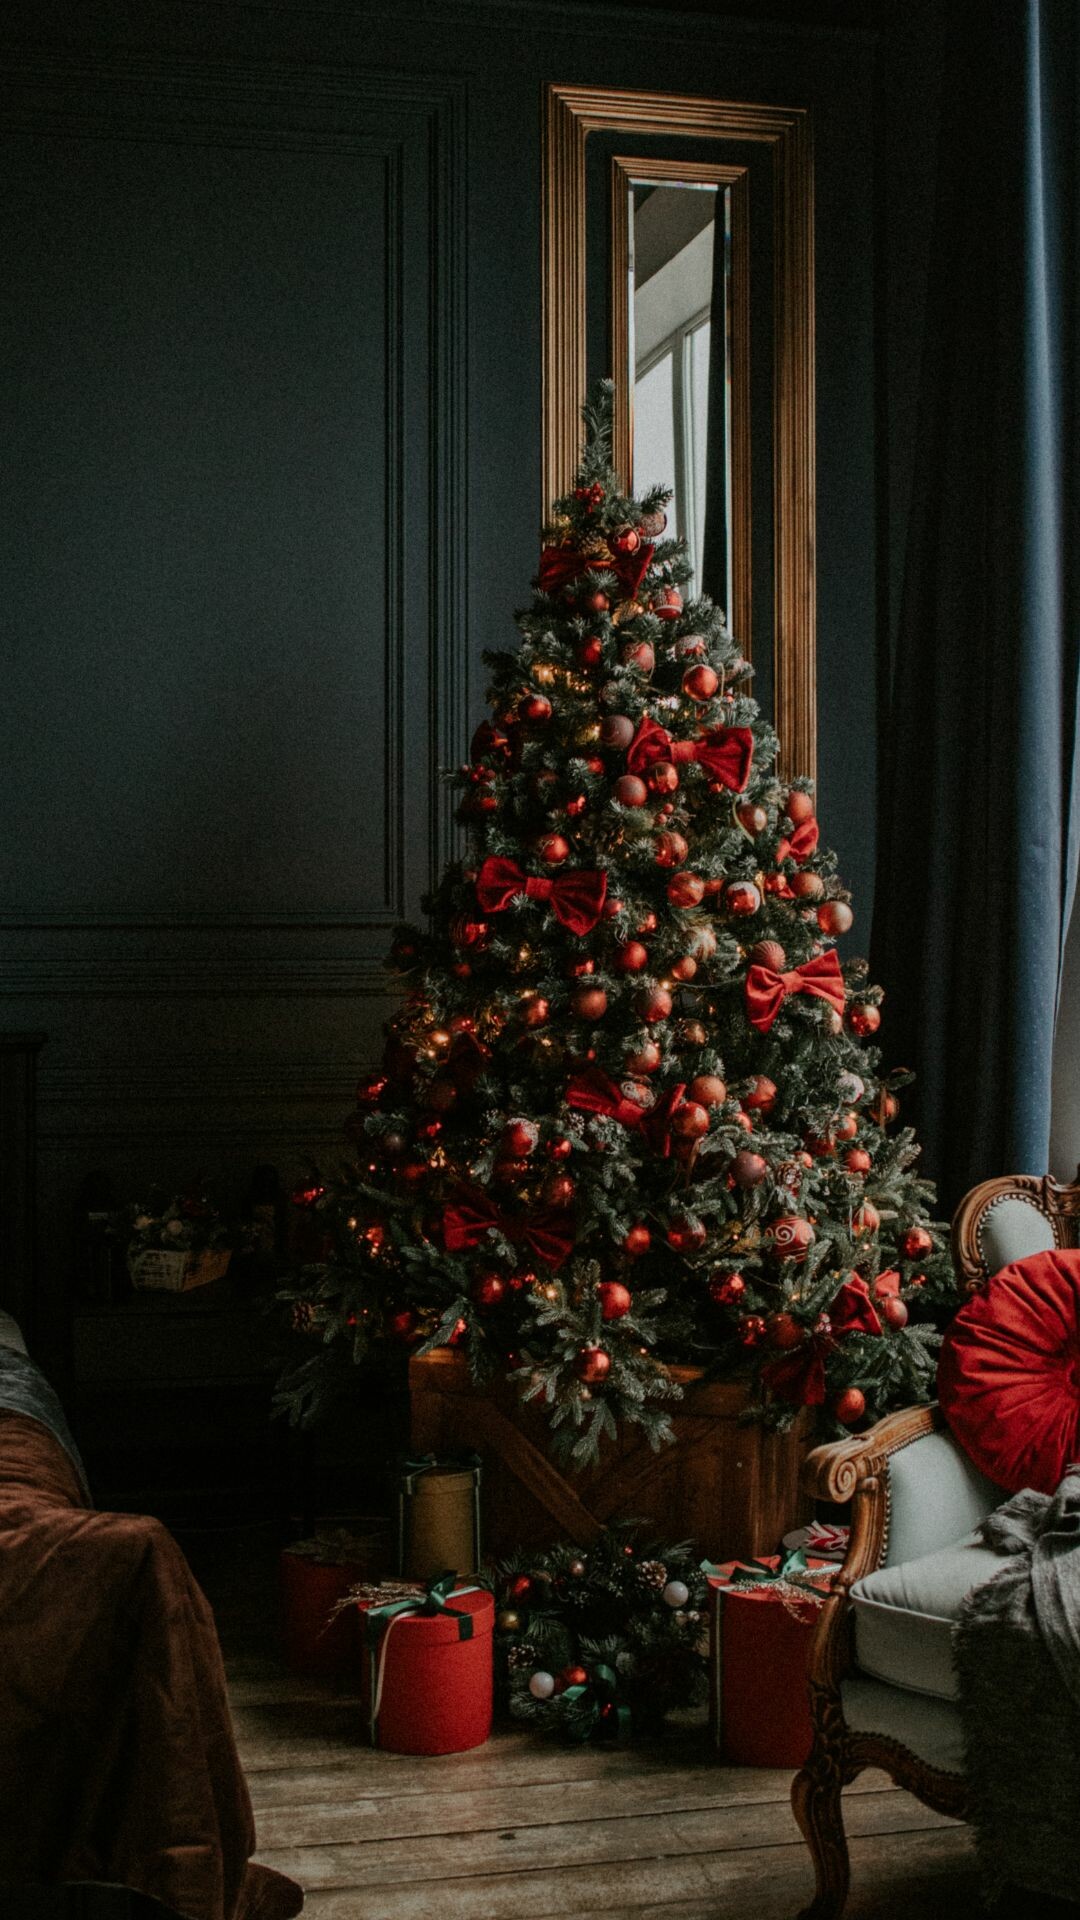 Christmas Tree: The best-selling species are Scotch Pine, Douglas Fir, Fraser Fir, Balsam Fir and White Pine. 1080x1920 Full HD Wallpaper.